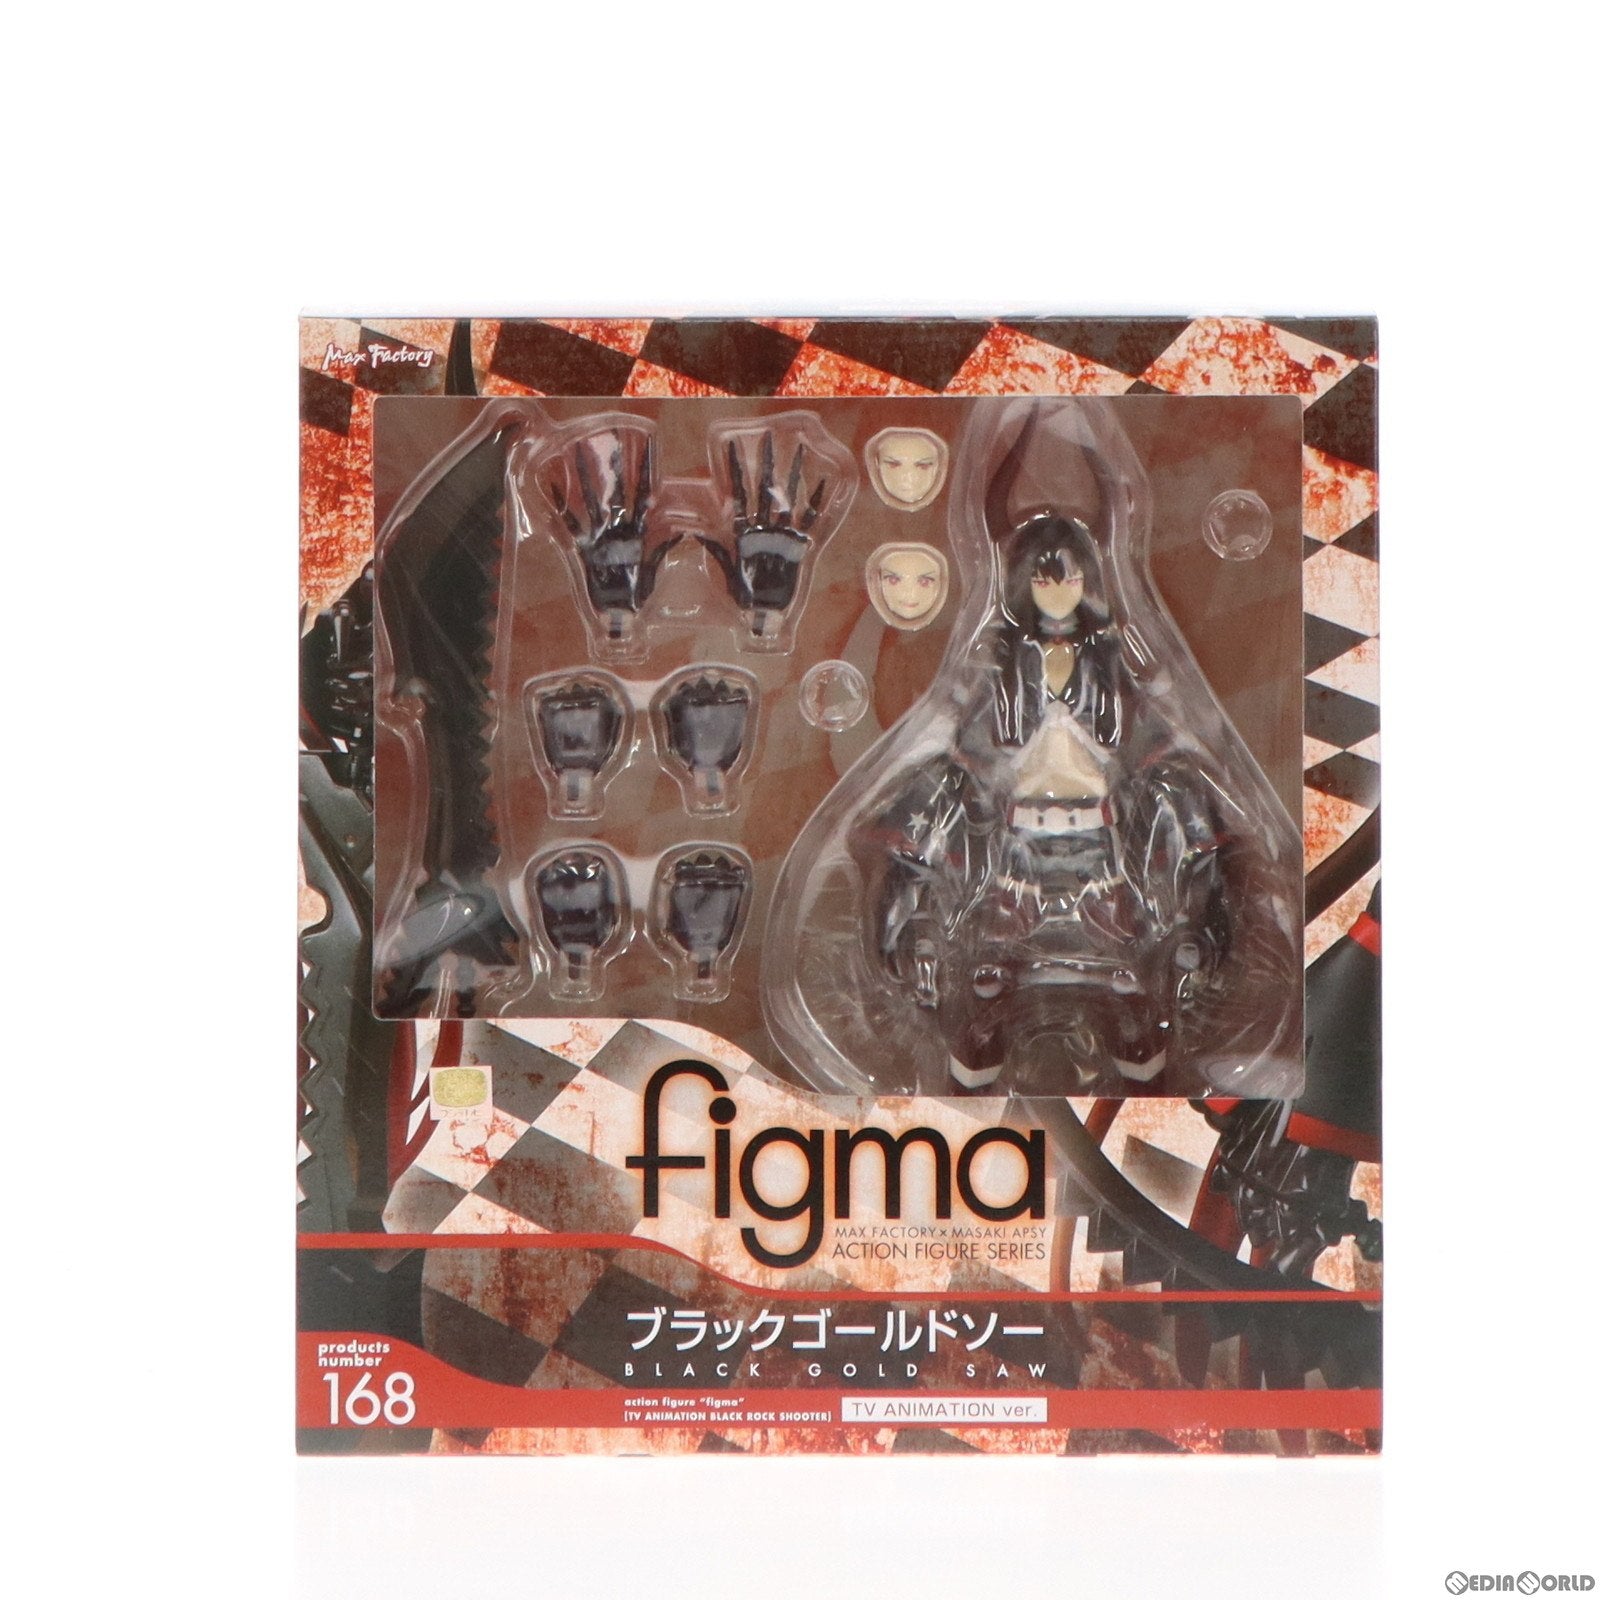 【中古即納】[FIG]figma(フィグマ) 168 ブラックゴールドソー TV ANIMATION ver. ブラック★ロックシューター 完成品 可動フィギュア マックスファクトリー(20130428)